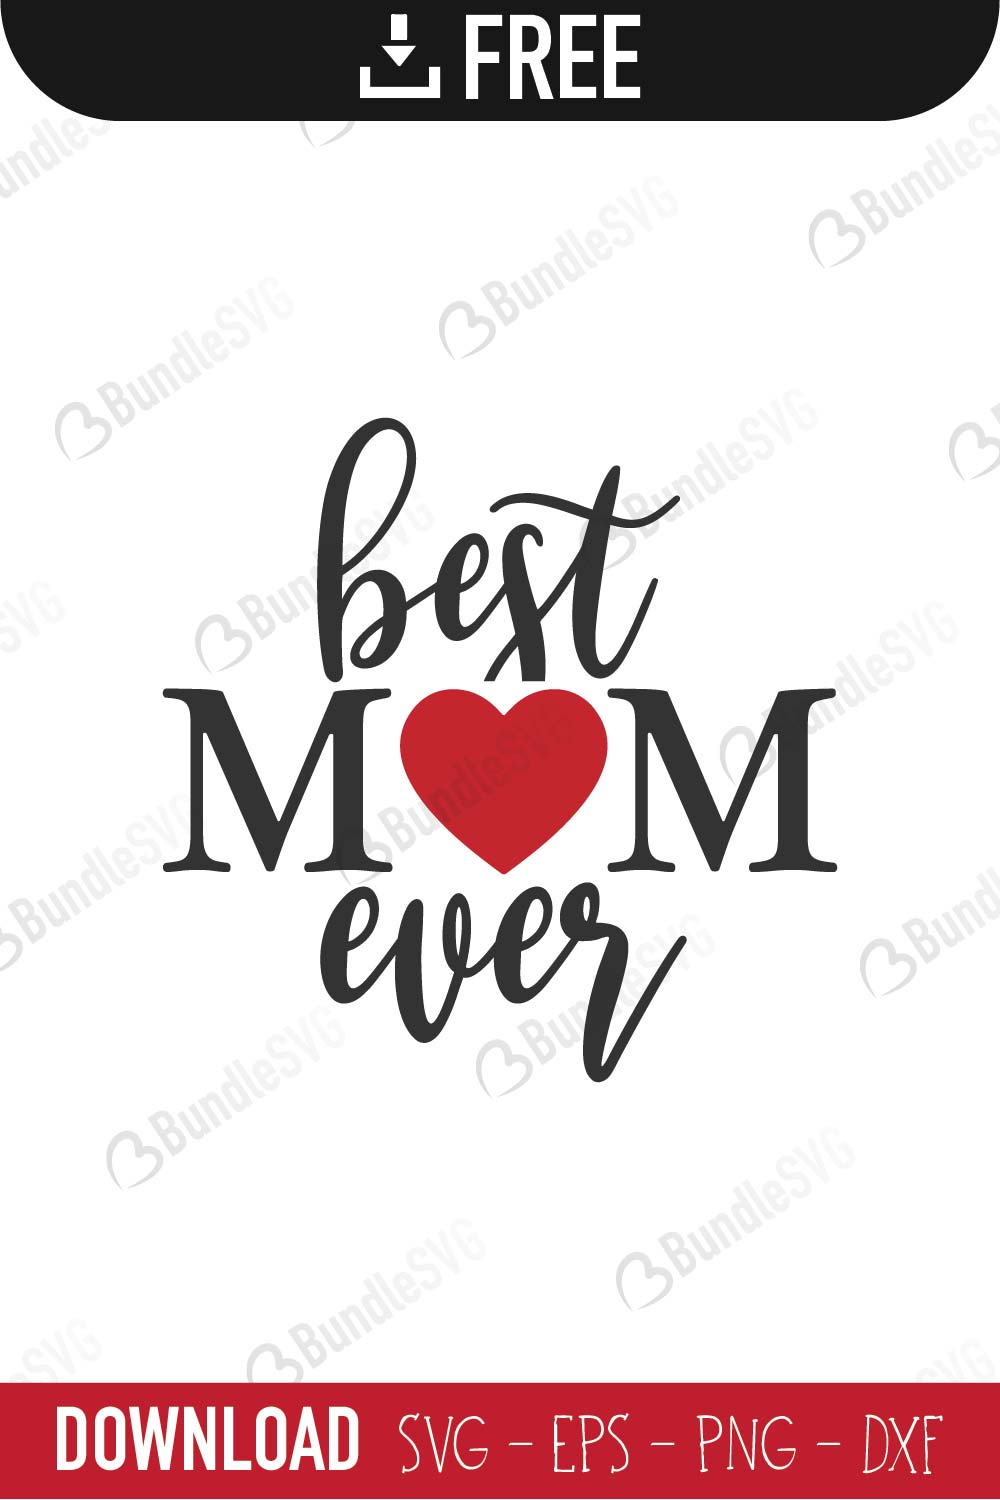 Download Best Mom Ever SVG Cut Files Free Download | BundleSVG.com